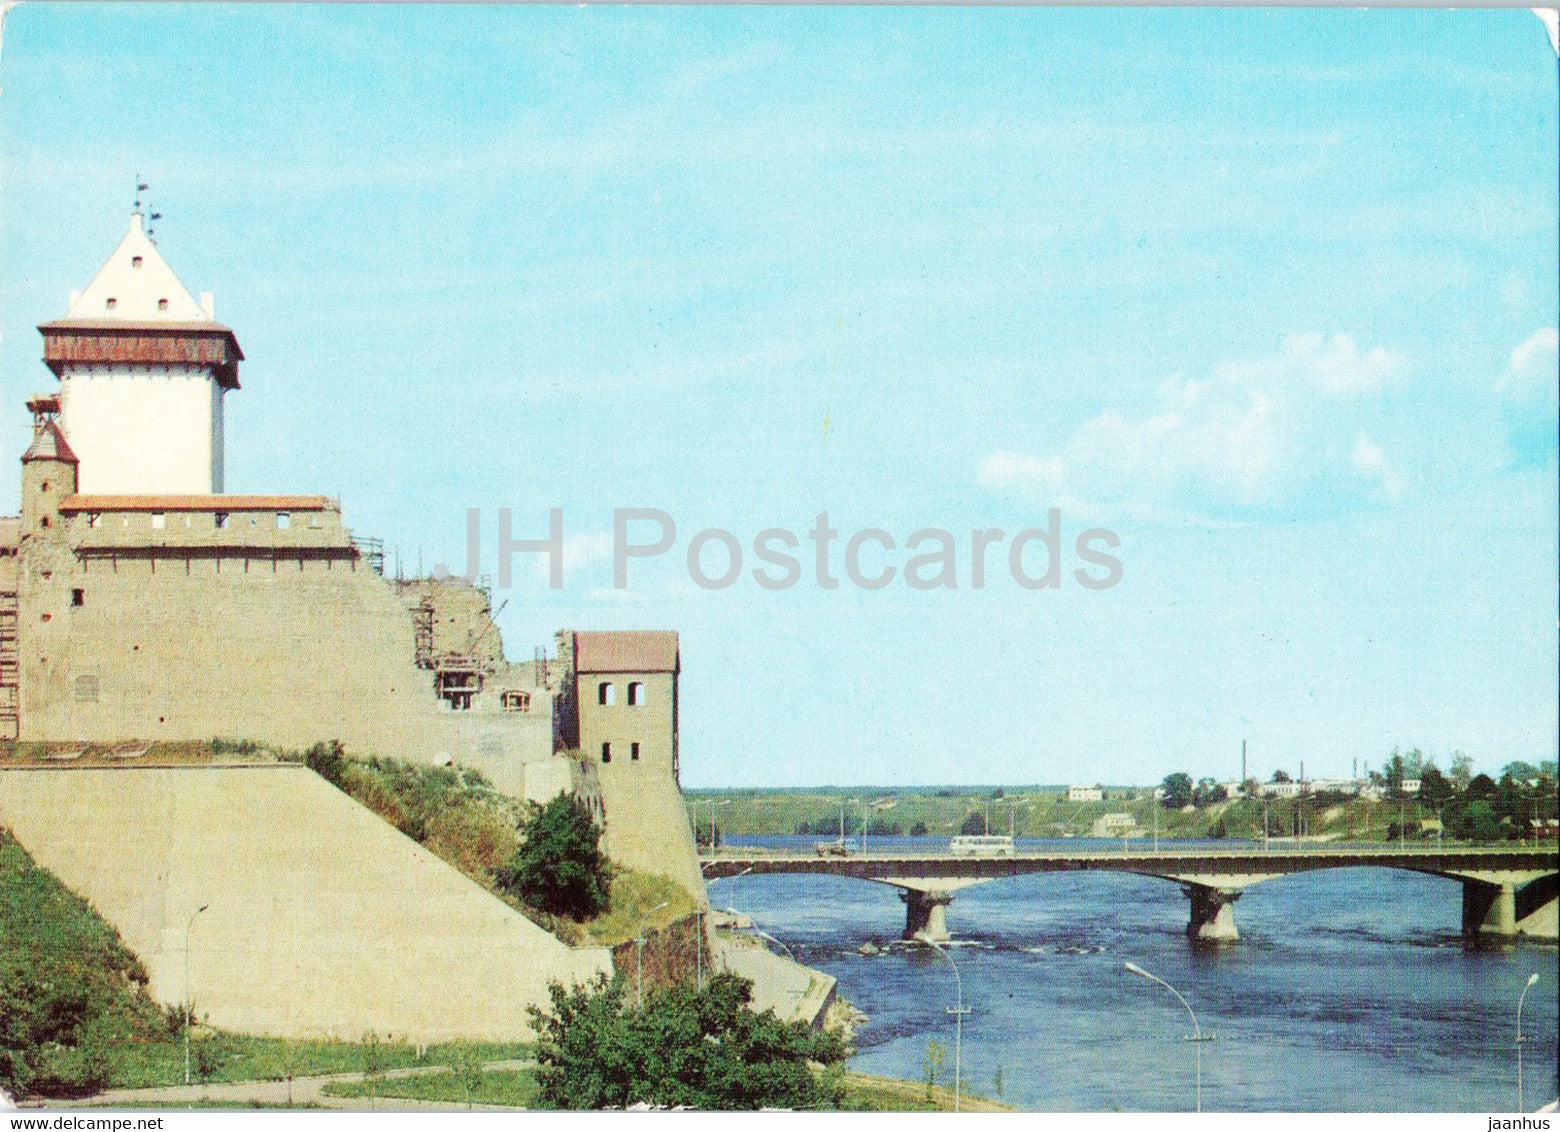 Narva - Herman Castle - bridge - postal stationery - 1976 - Estonia USSR - unused - JH Postcards